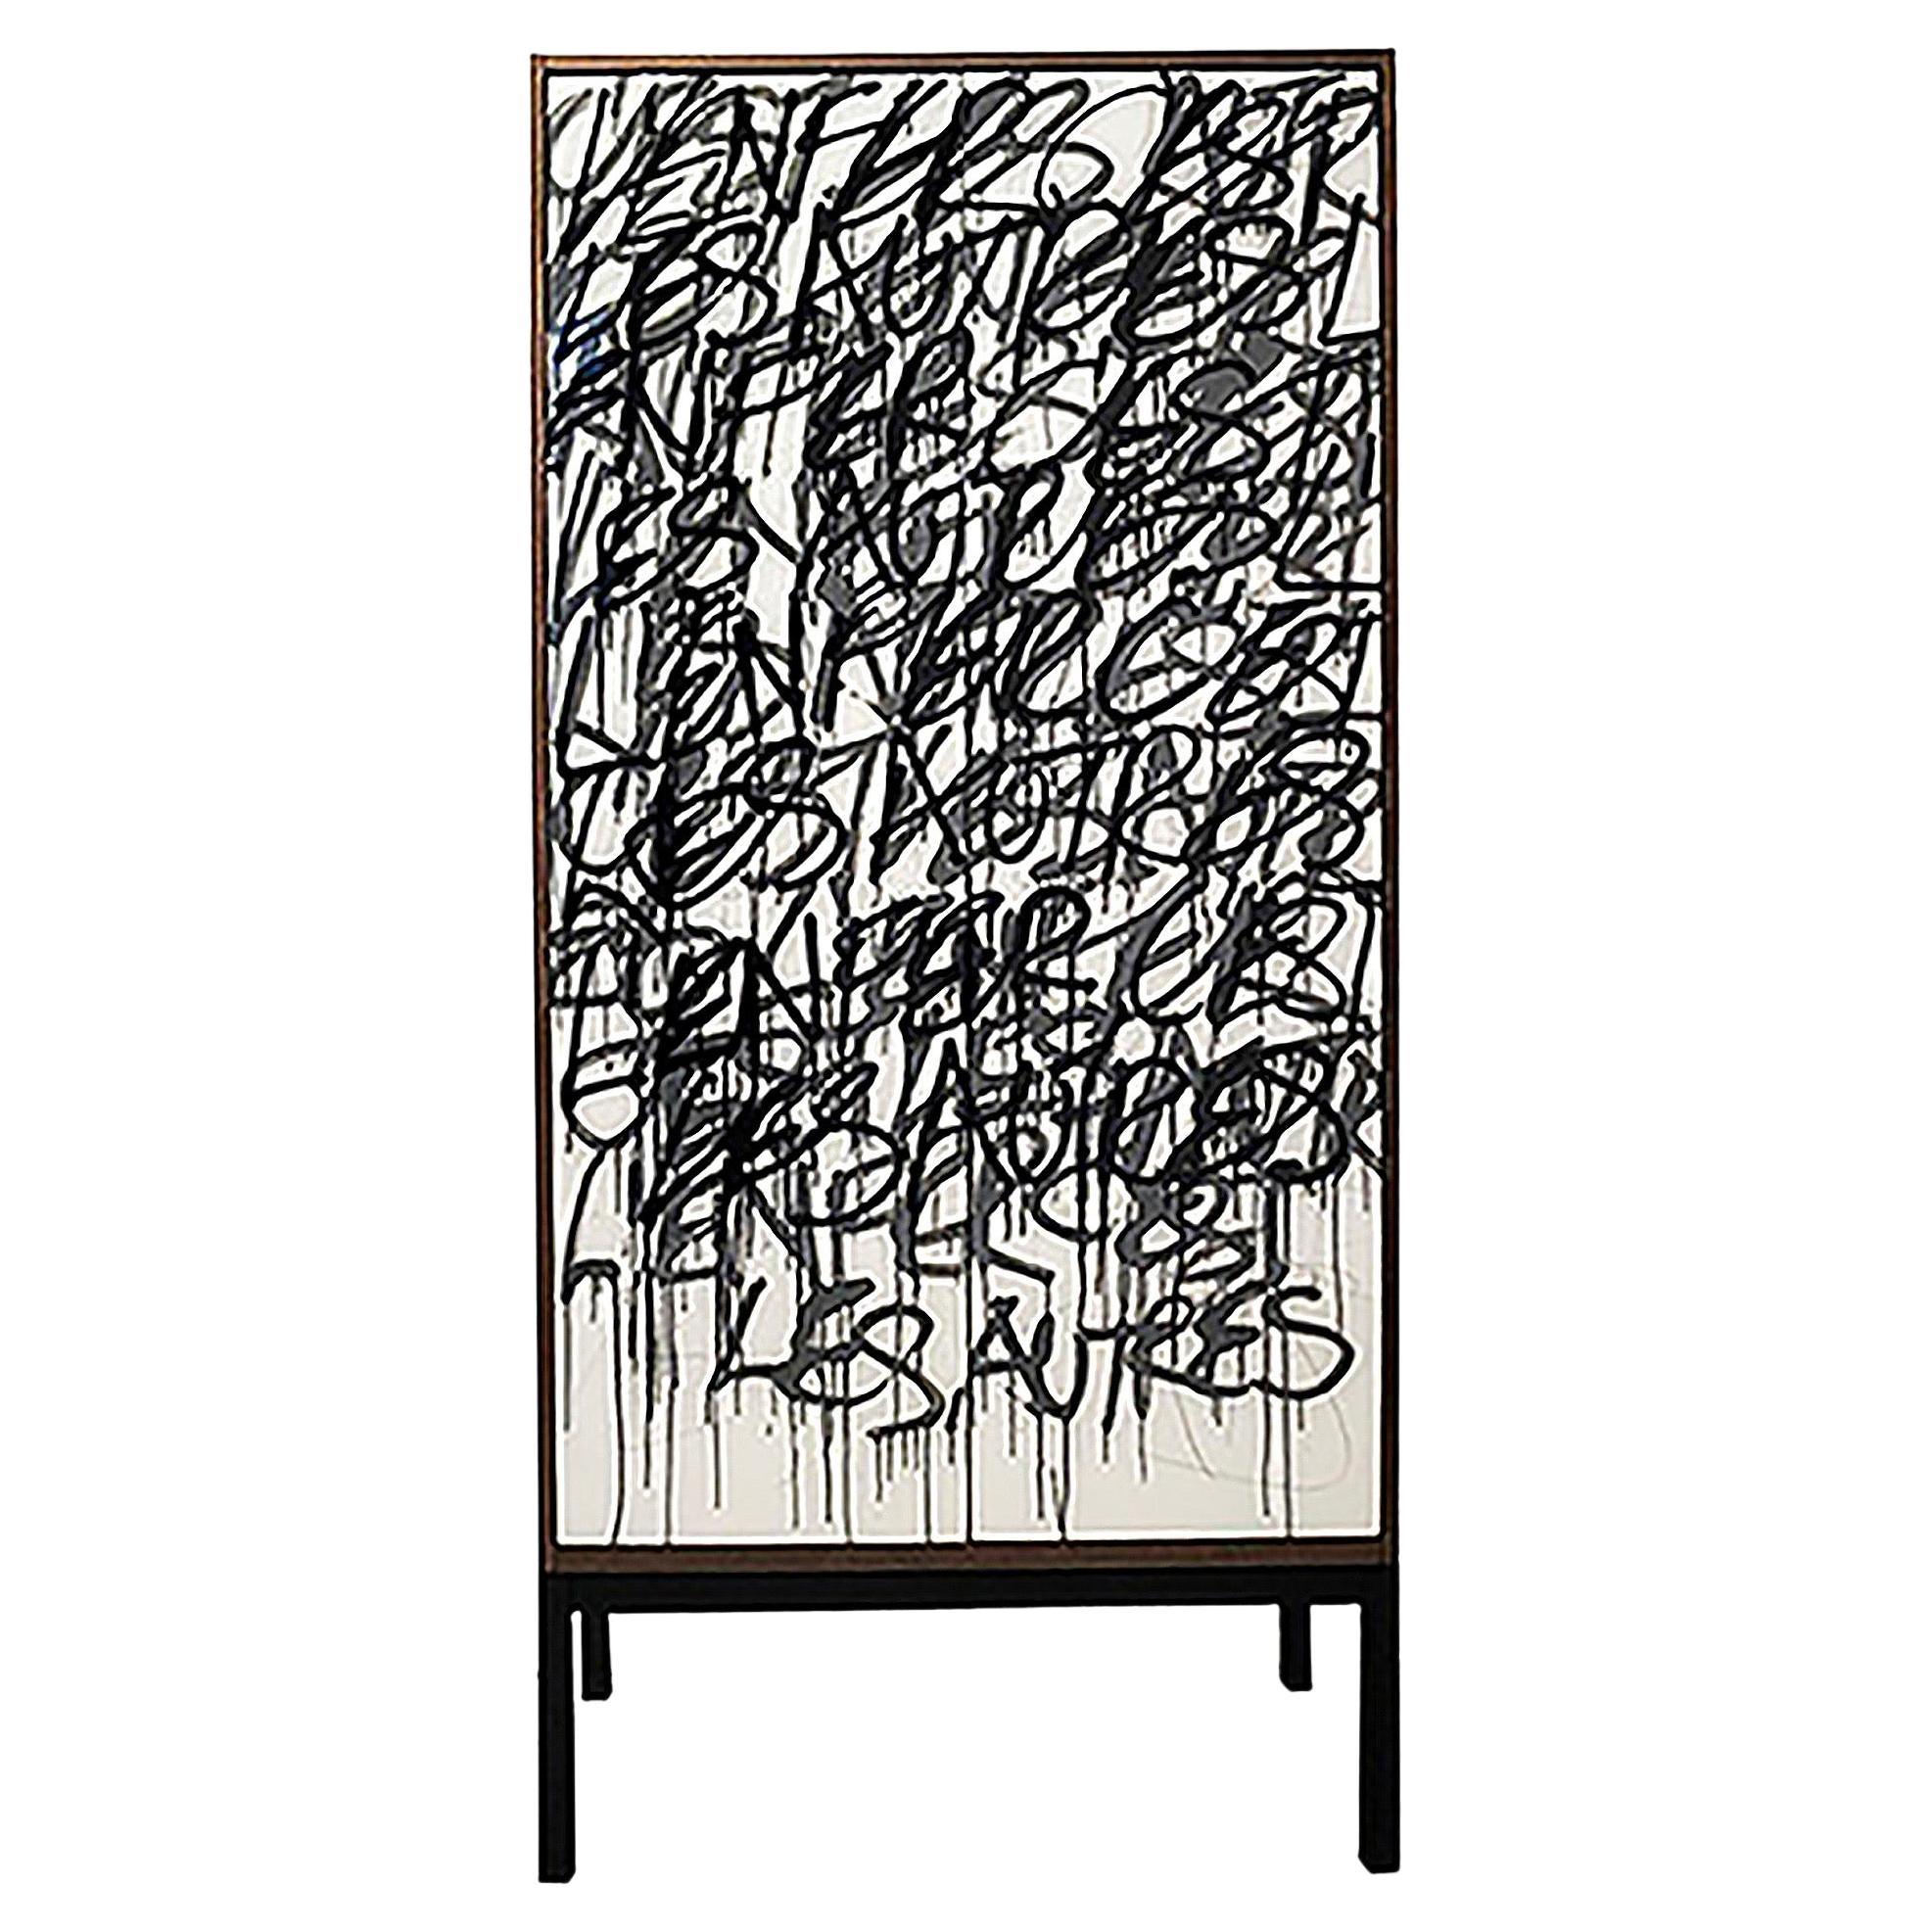 L'A&M. Le meuble bar est basé sur notre armoire Say It Again graffiti.

Le client peut fournir des mots que l'artiste incorporera dans l'œuvre d'art sur les portes, rendant ainsi l'armoire unique en son genre.

L'extérieur est en noyer, l'intérieur